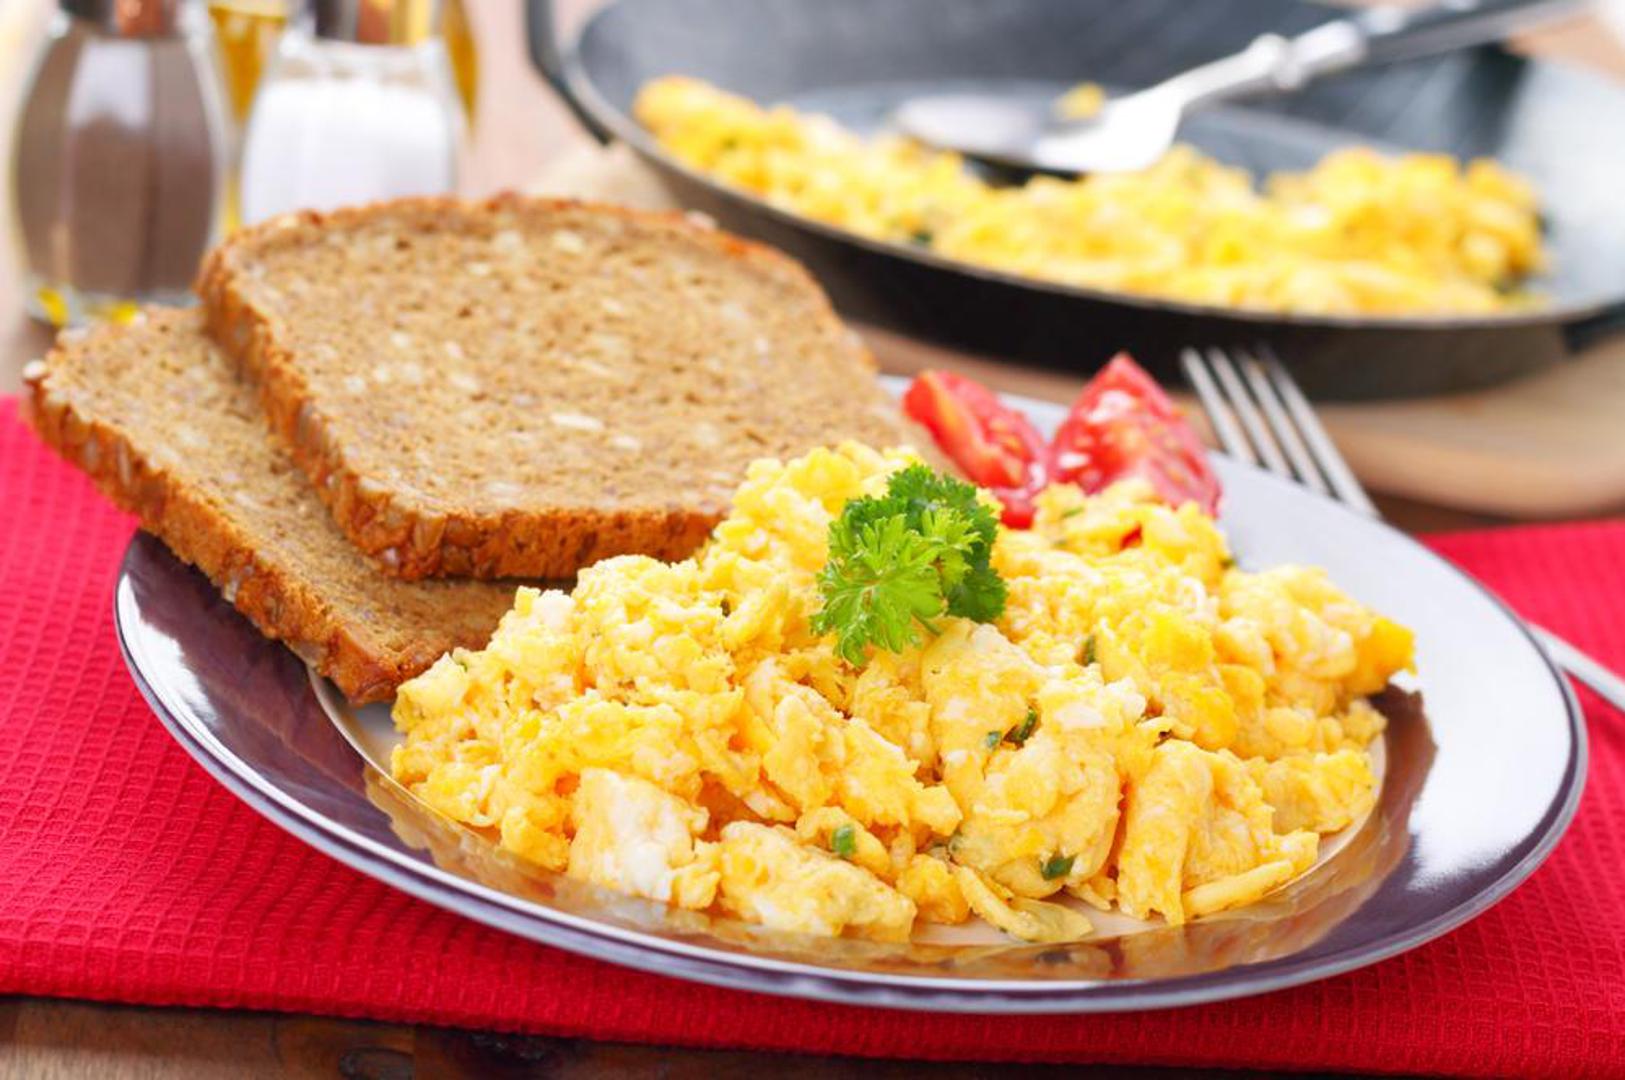 Jedno od najčešćih izbora namirnice za doručak su upravo jaja. Neki ih vole pripremati na određeni način, a neki vole kombinirati i eksperimentirati s novim načinom pripreme...